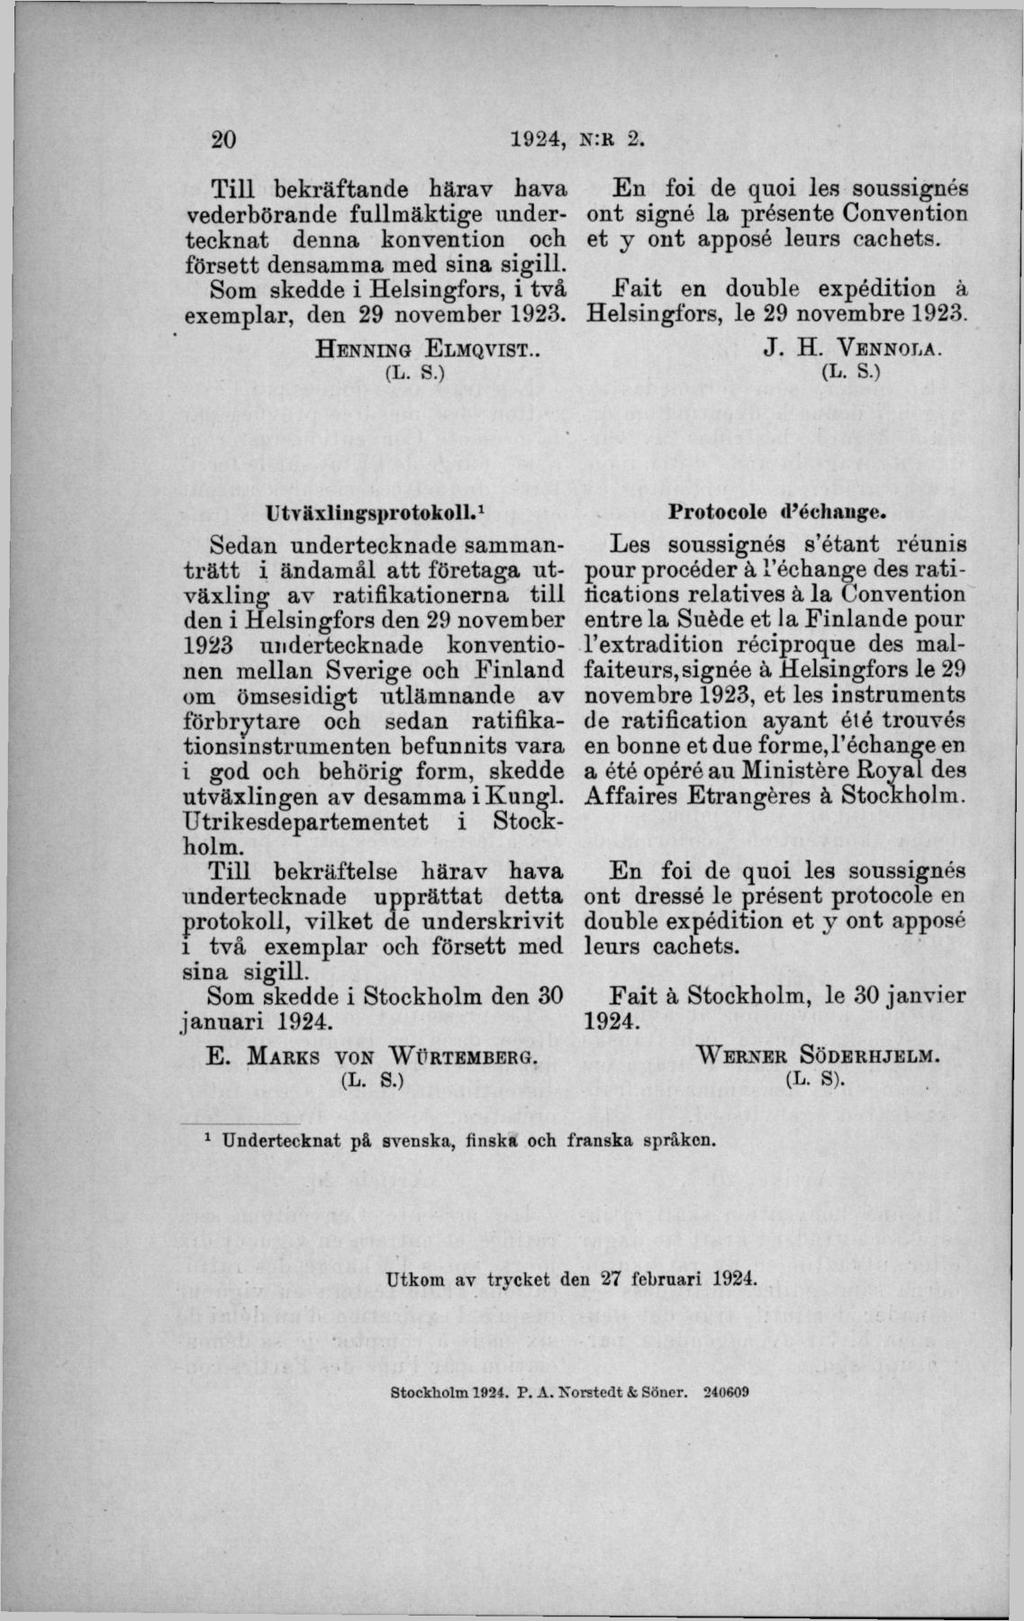 T ill bekräftande härav hava vederbörande fullm äktige undertecknat denna konvention och försett densamma med sina sigill. Som skedde i Helsingfors, i två exemplar, den 29 november 1923.